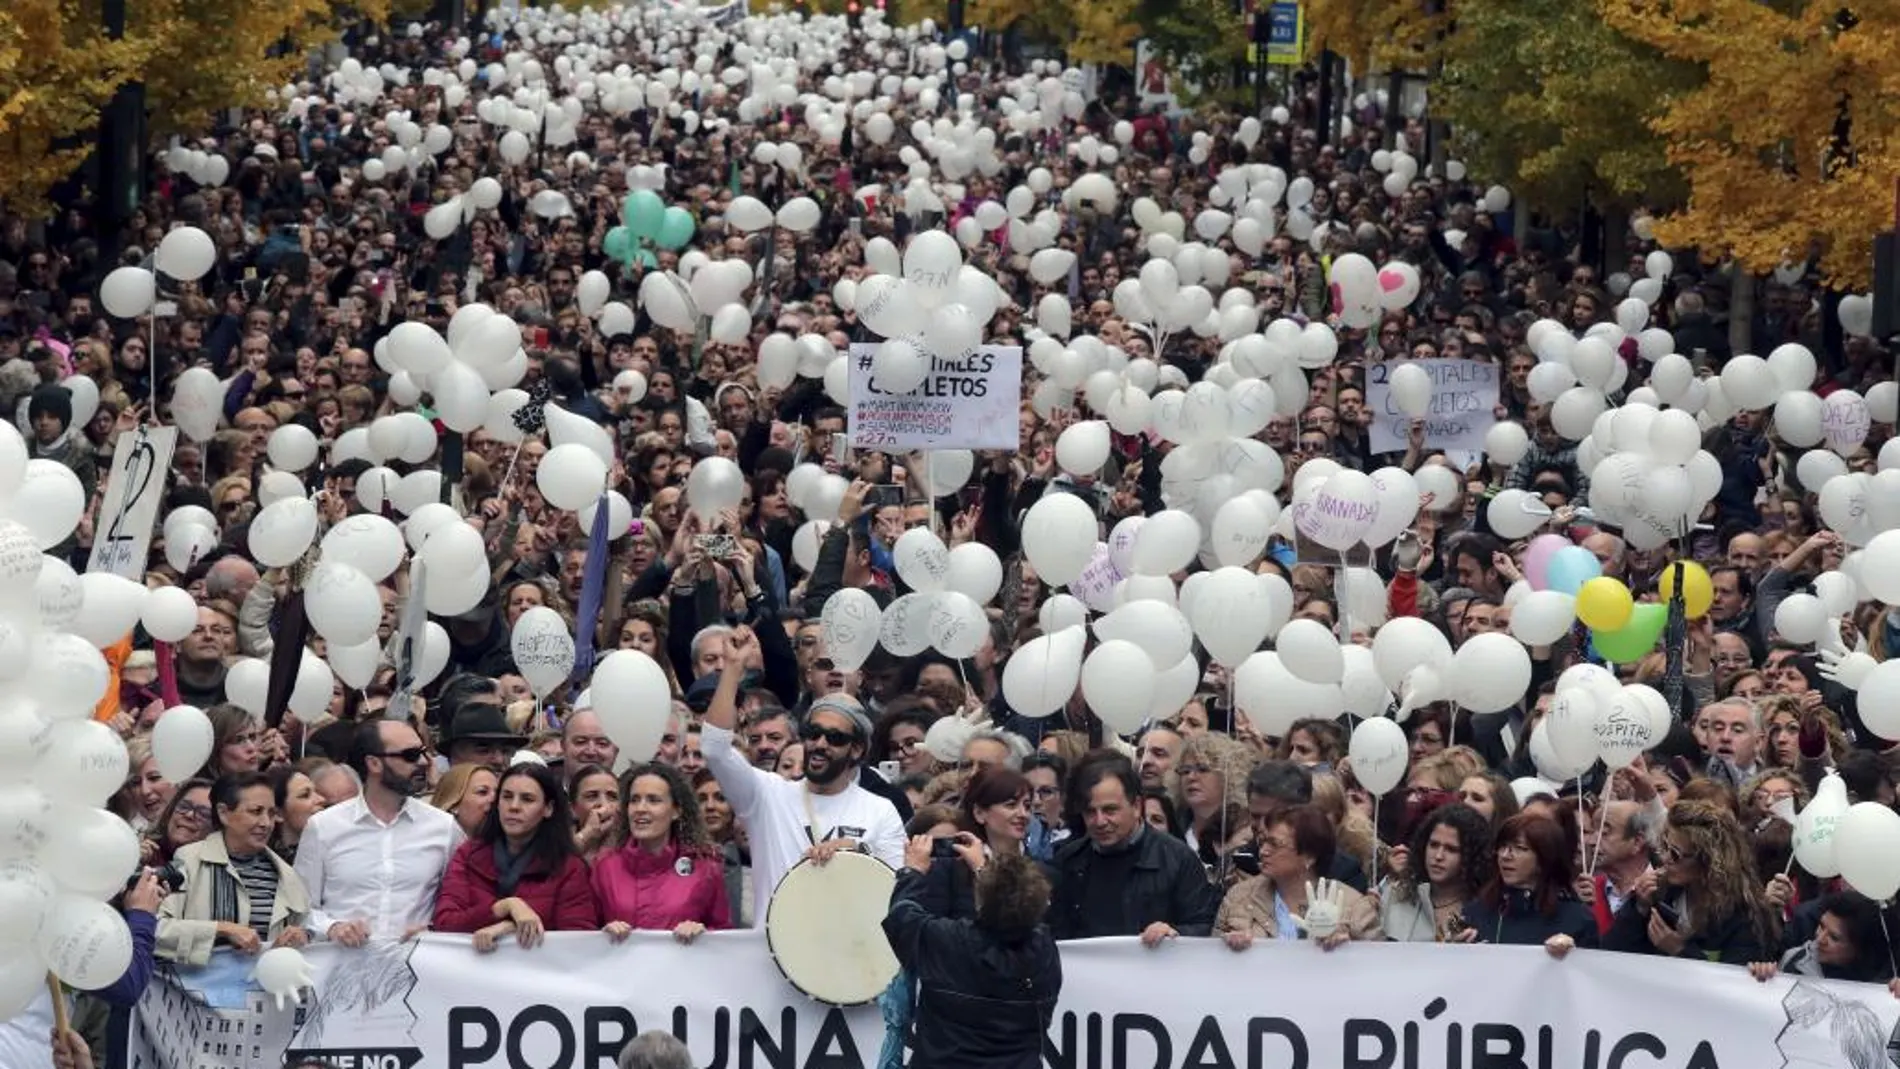 Las mareas blancas convocaron a miles de personas en protesta por los recortes y la pérdida de calidad asistencial en la sanidad pública andaluza